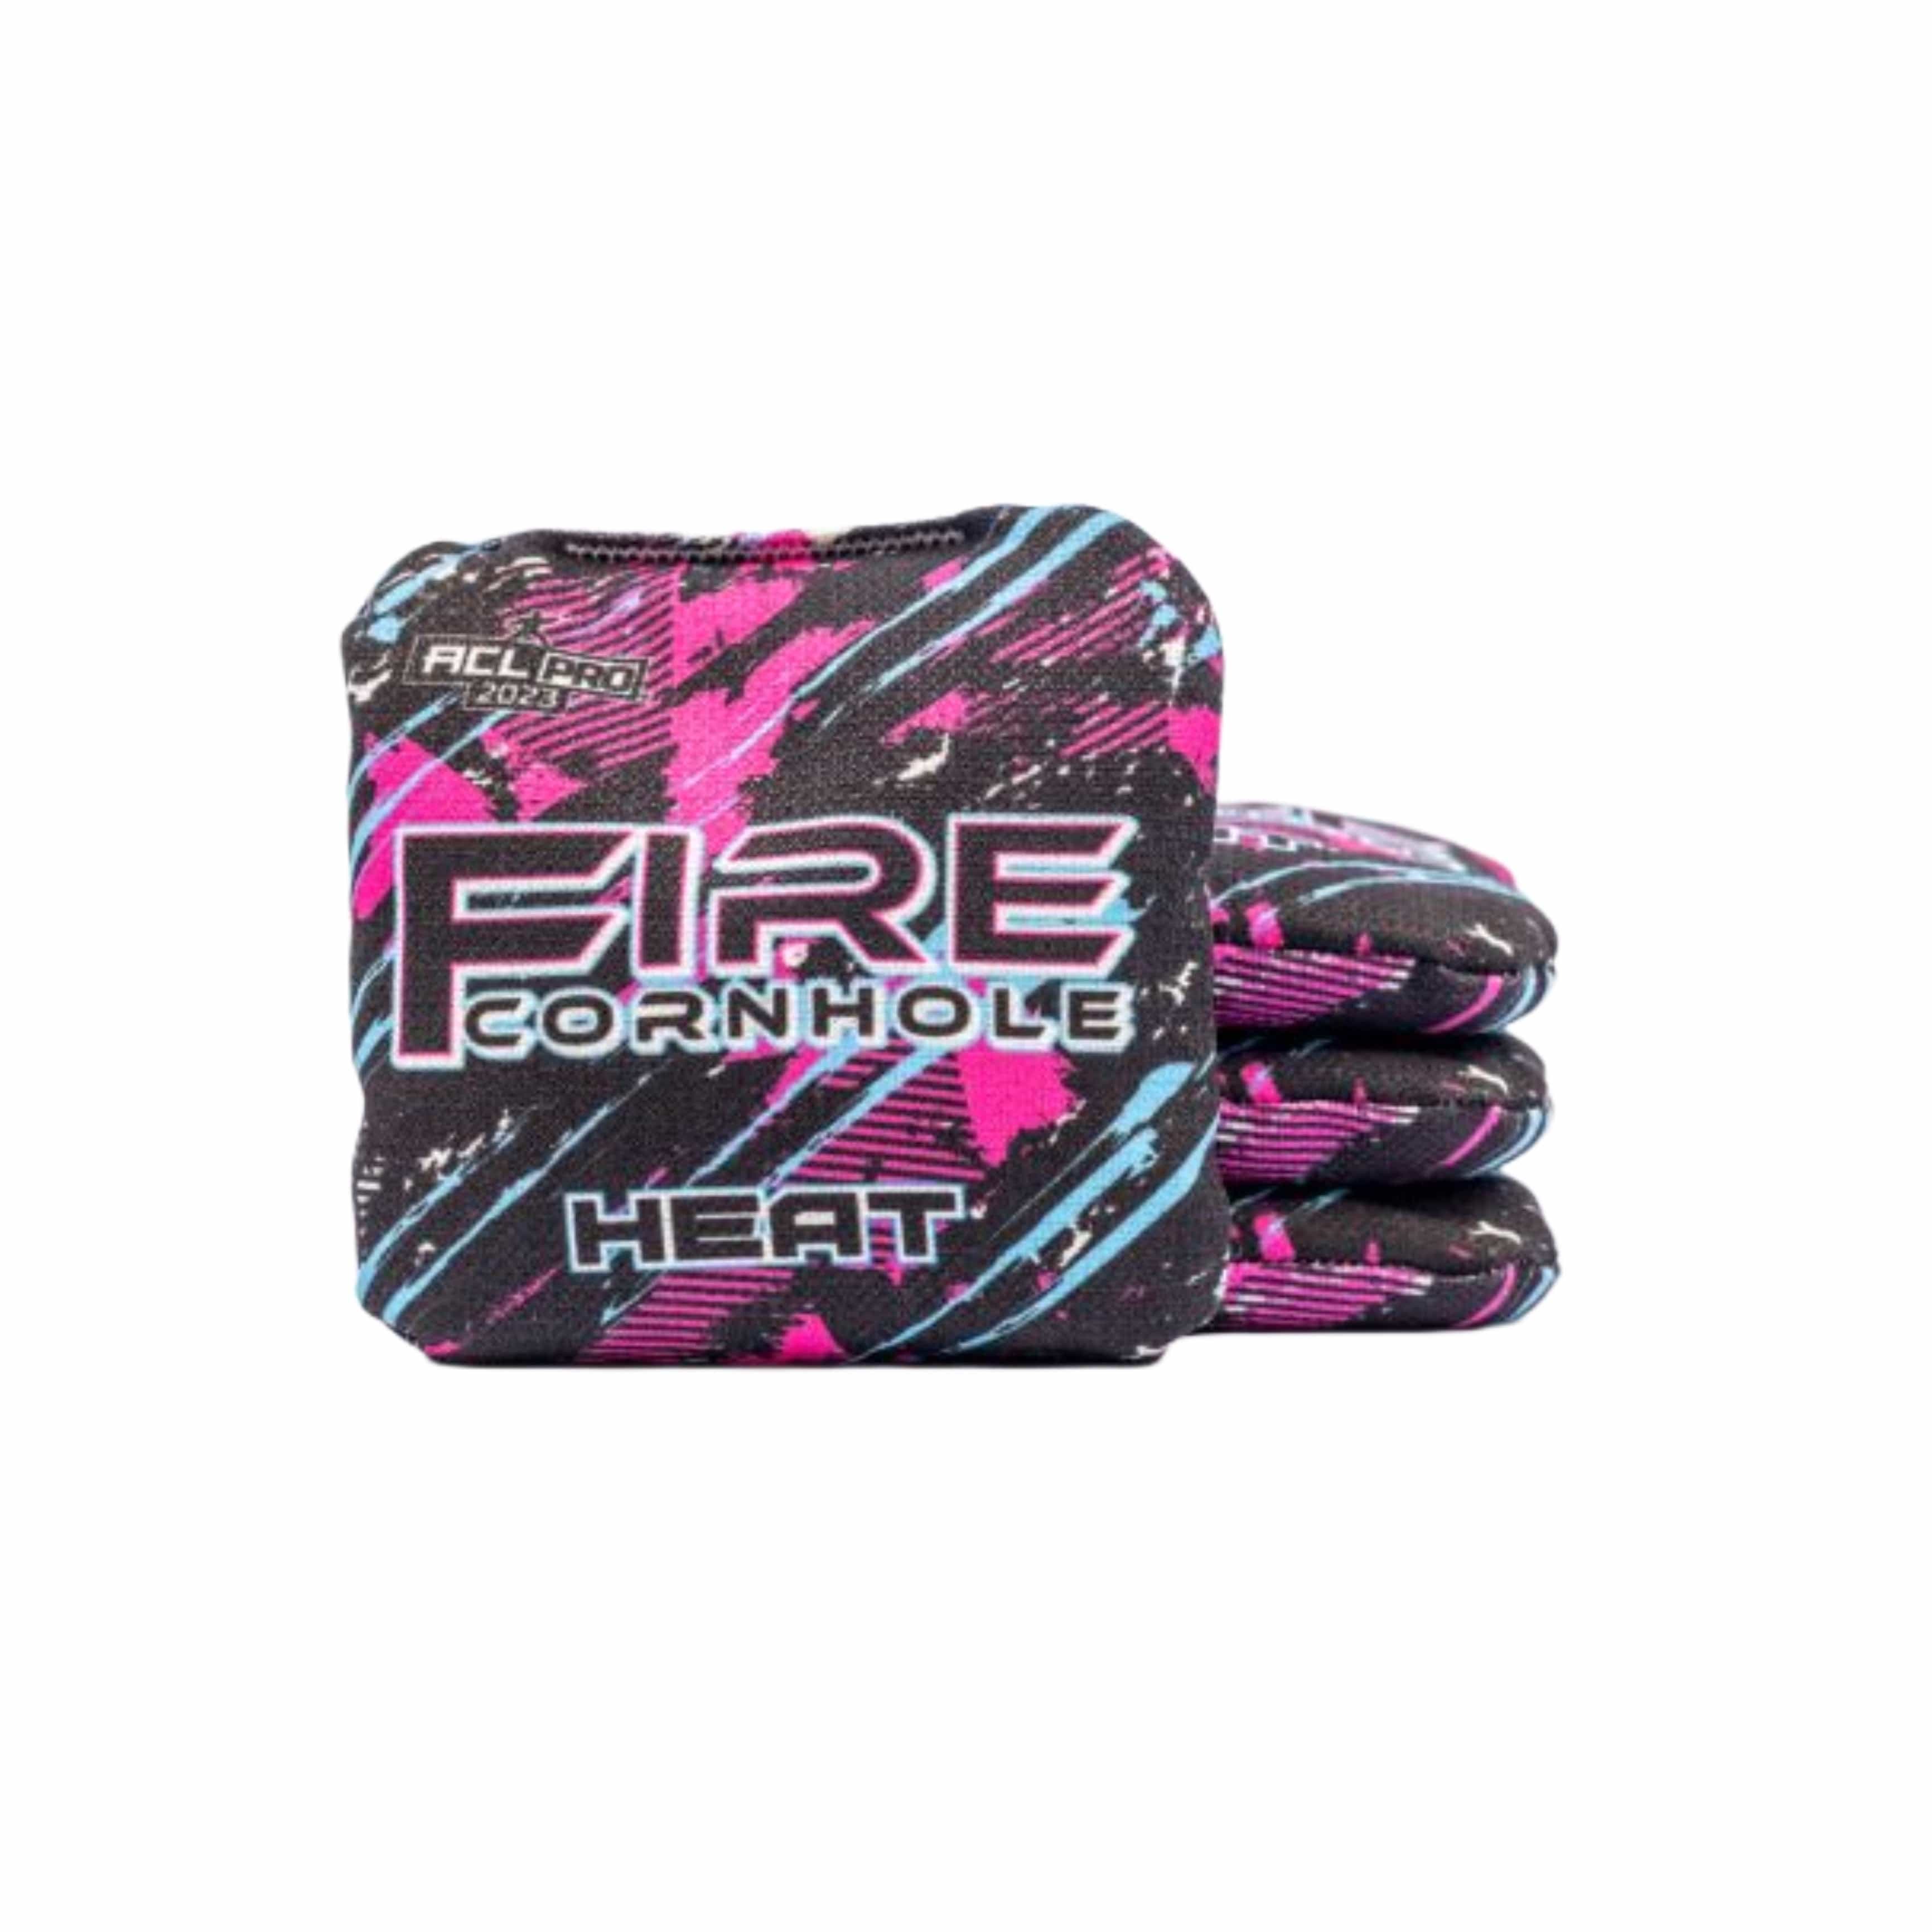 Fire Heat ACL cornhole bags in pink